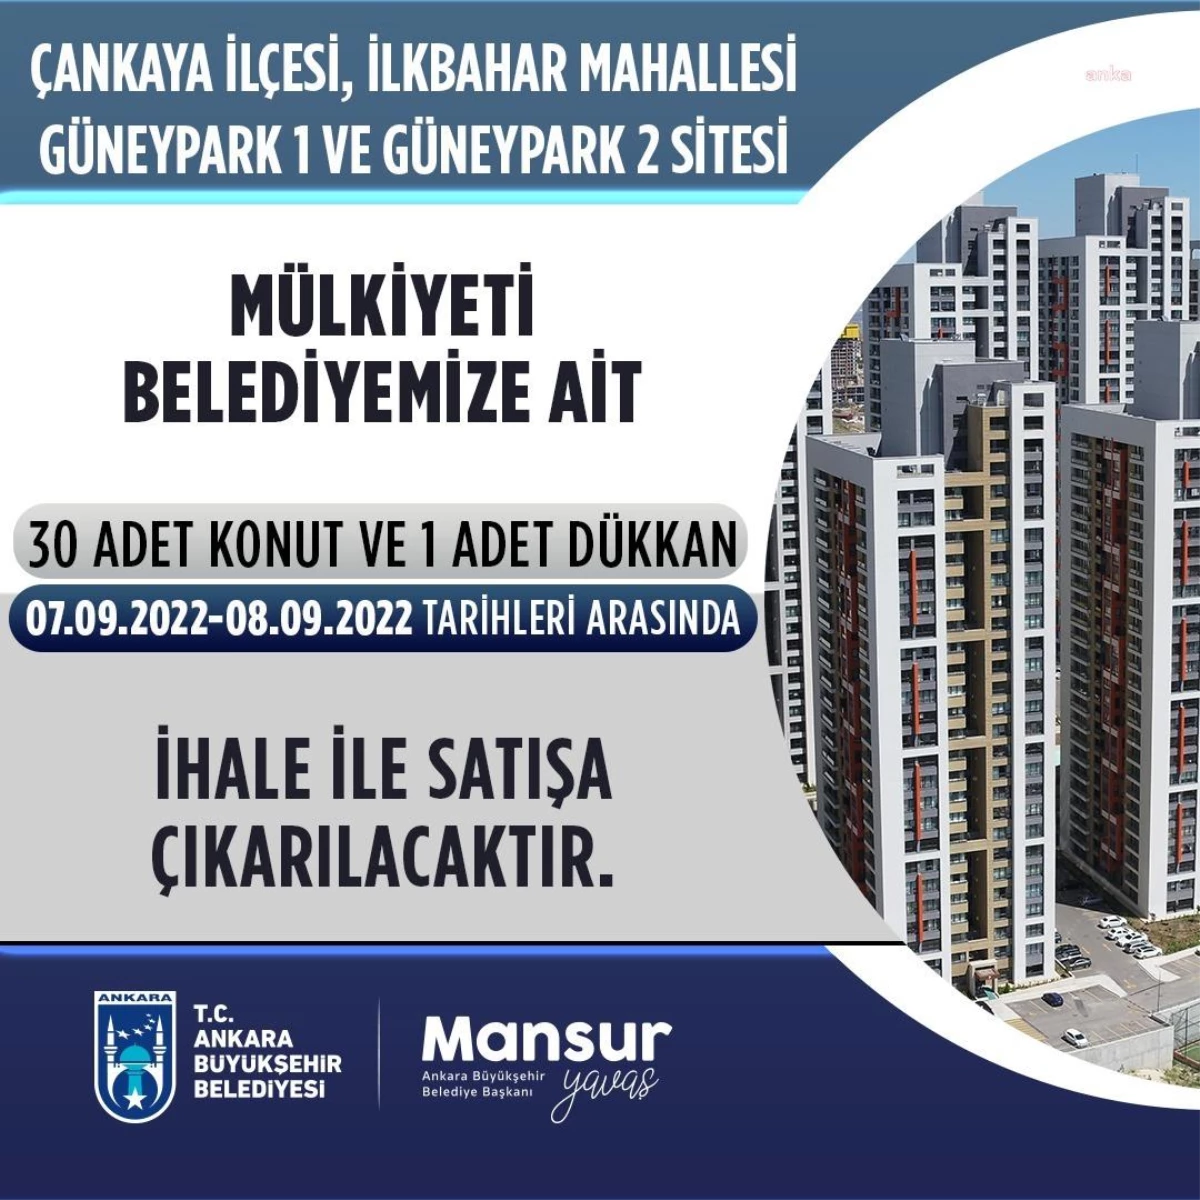 Ankara Büyükşehir Belediyesi, 31 Taşınmazı Daha İhale ile Satışa Çıkarıyor